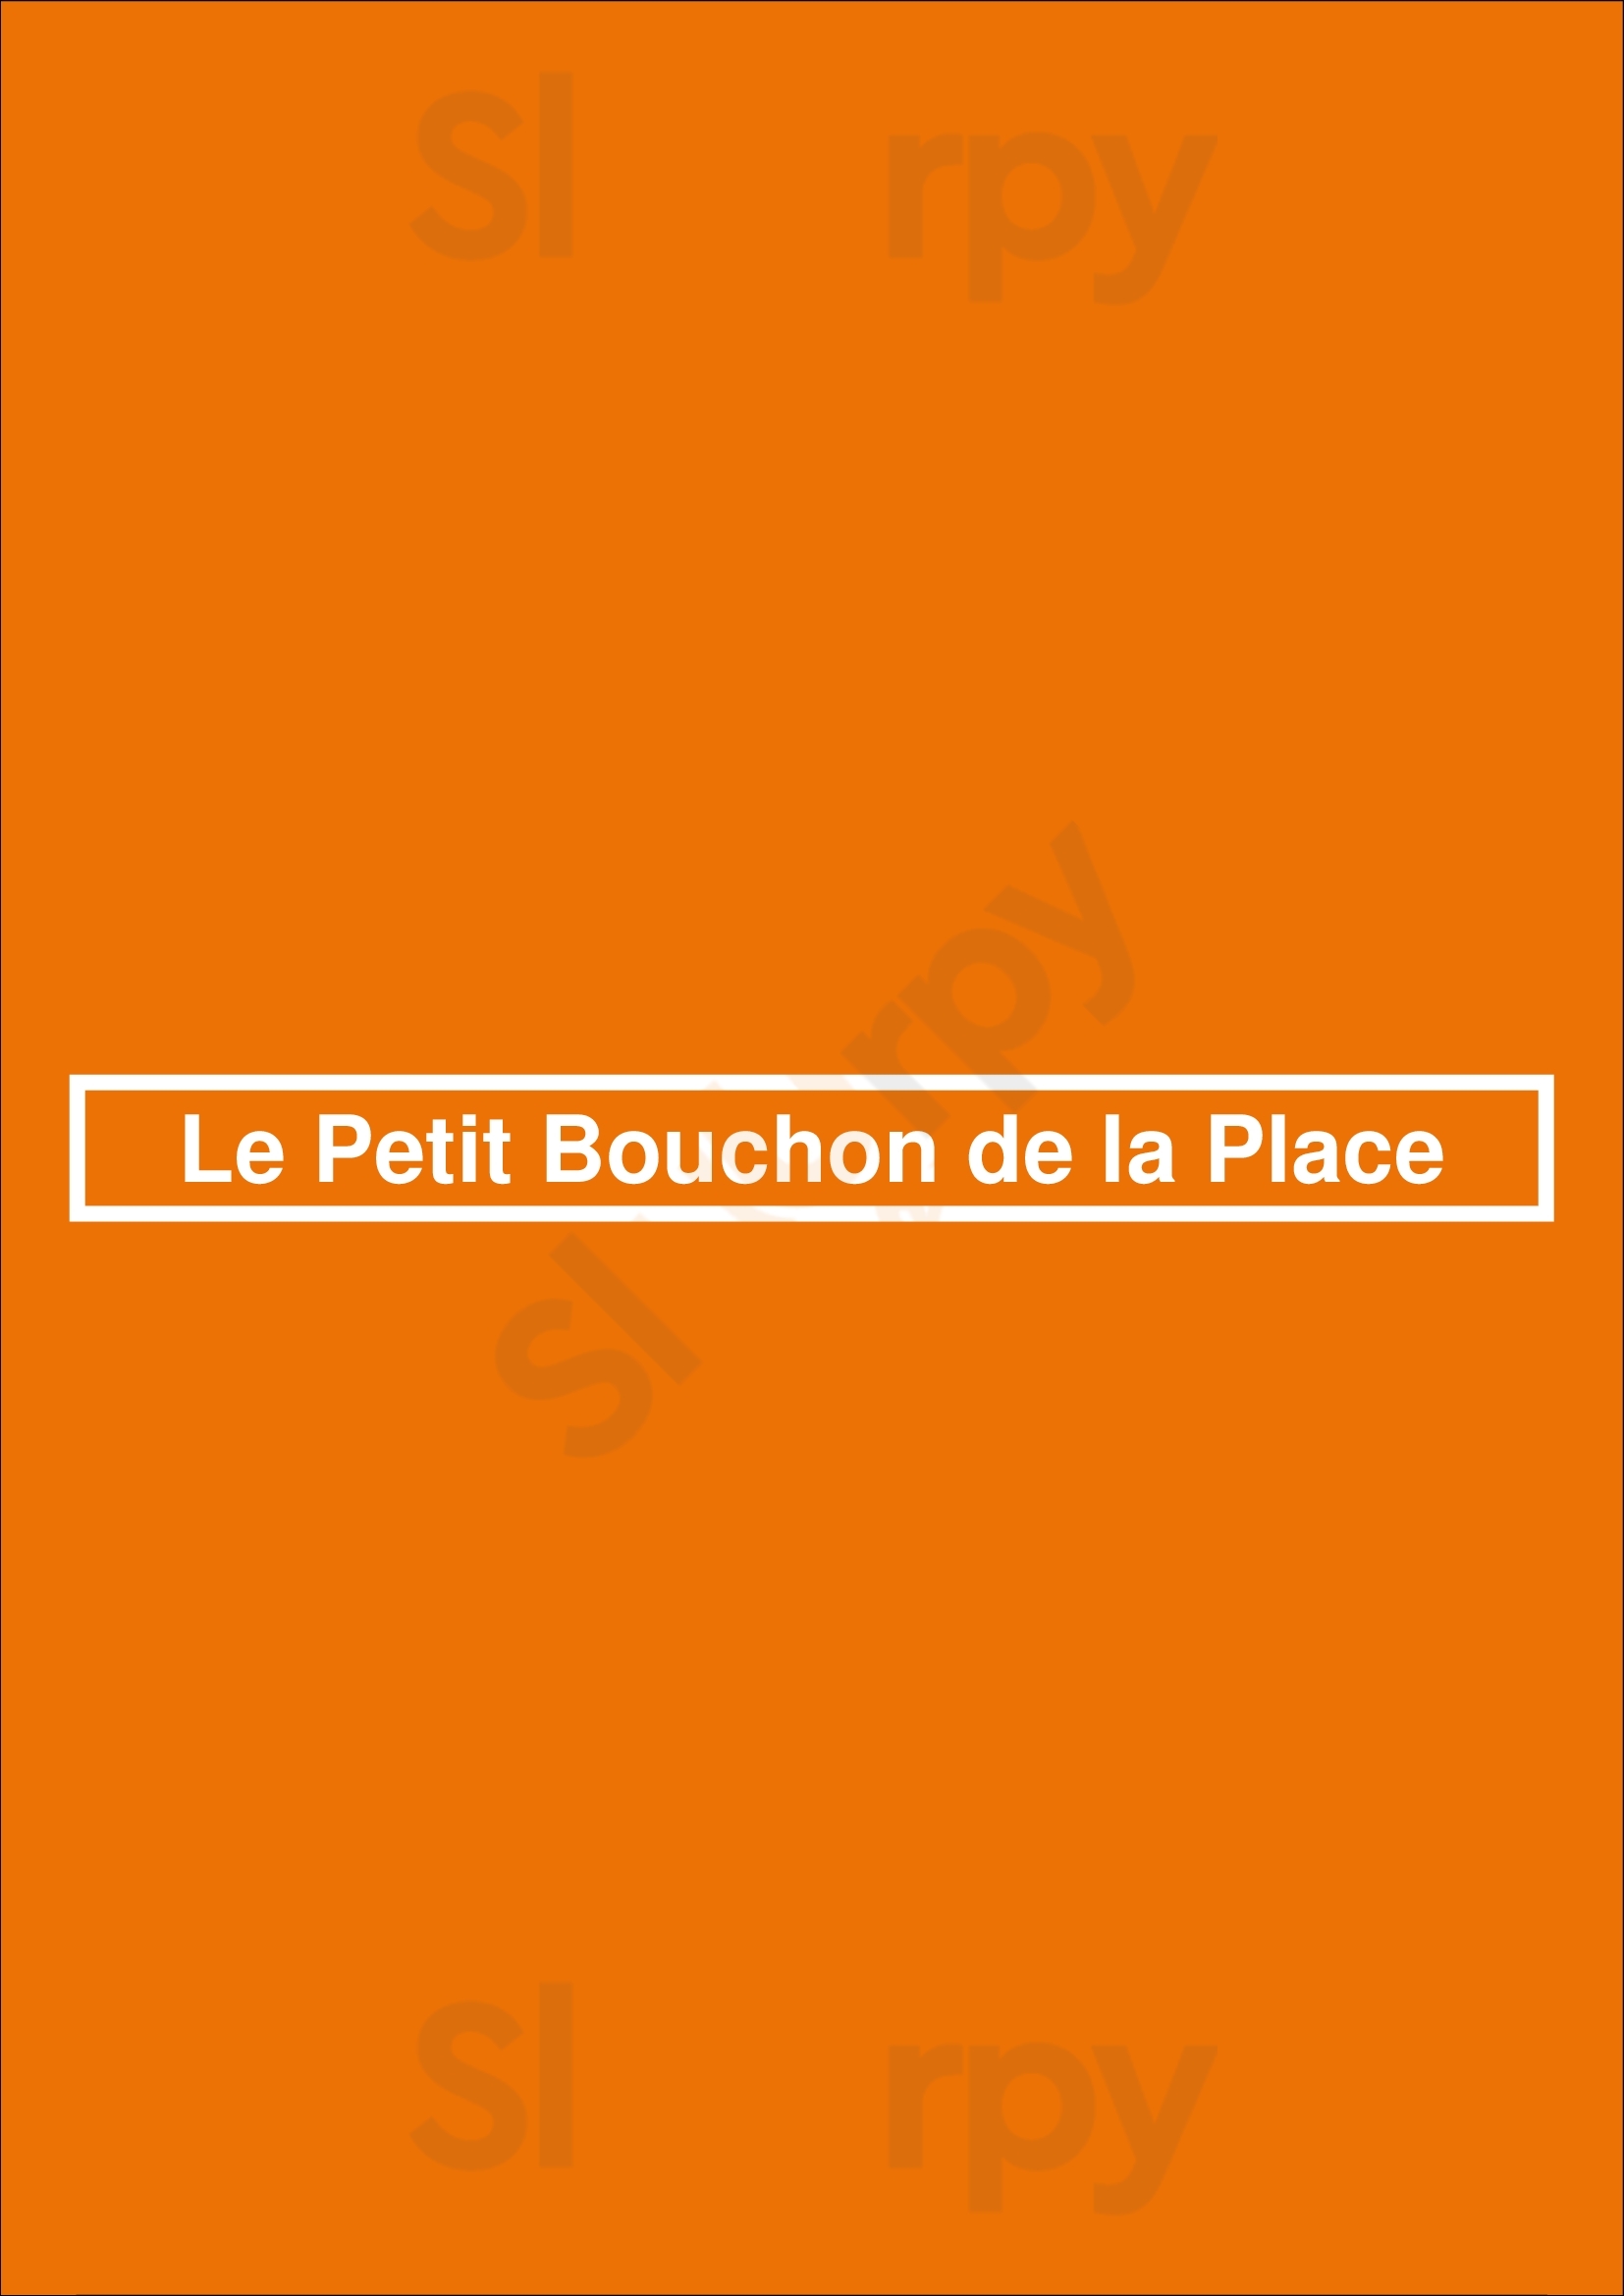 Le Petit Bouchon De La Place Lyon Menu - 1